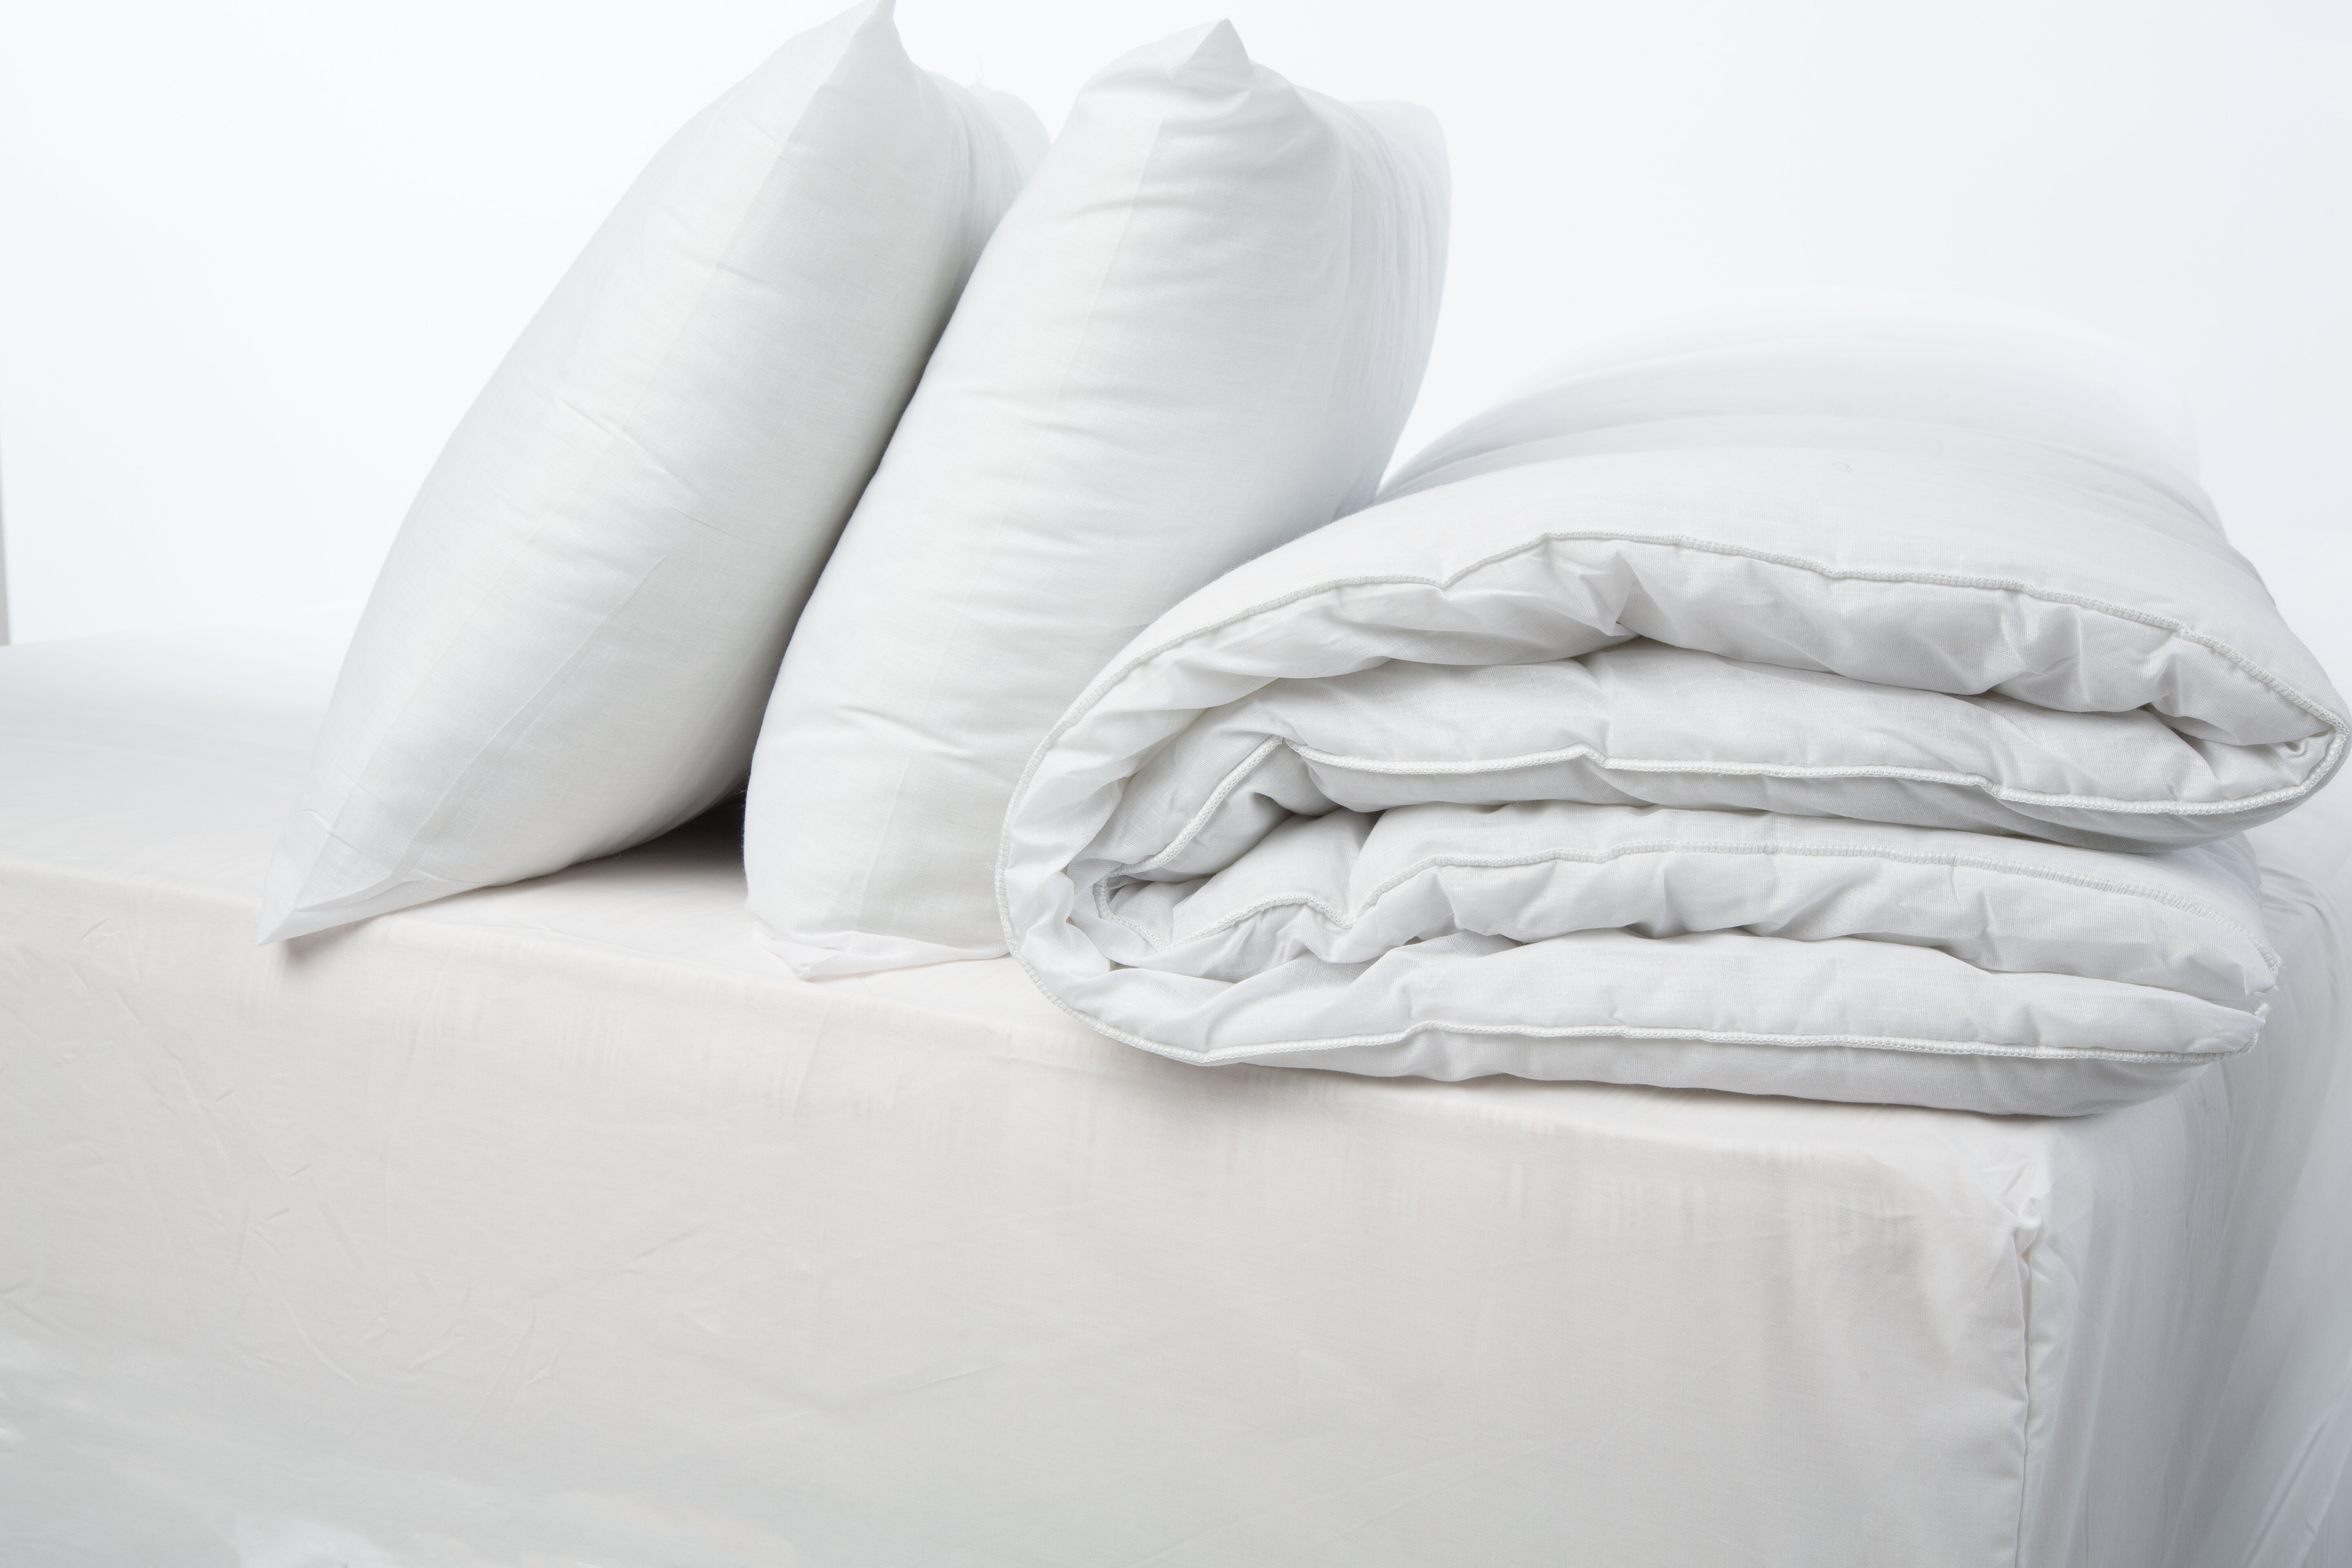 Symple Stuff 10 5 Tog Duvet With Pillows Reviews Wayfair Co Uk